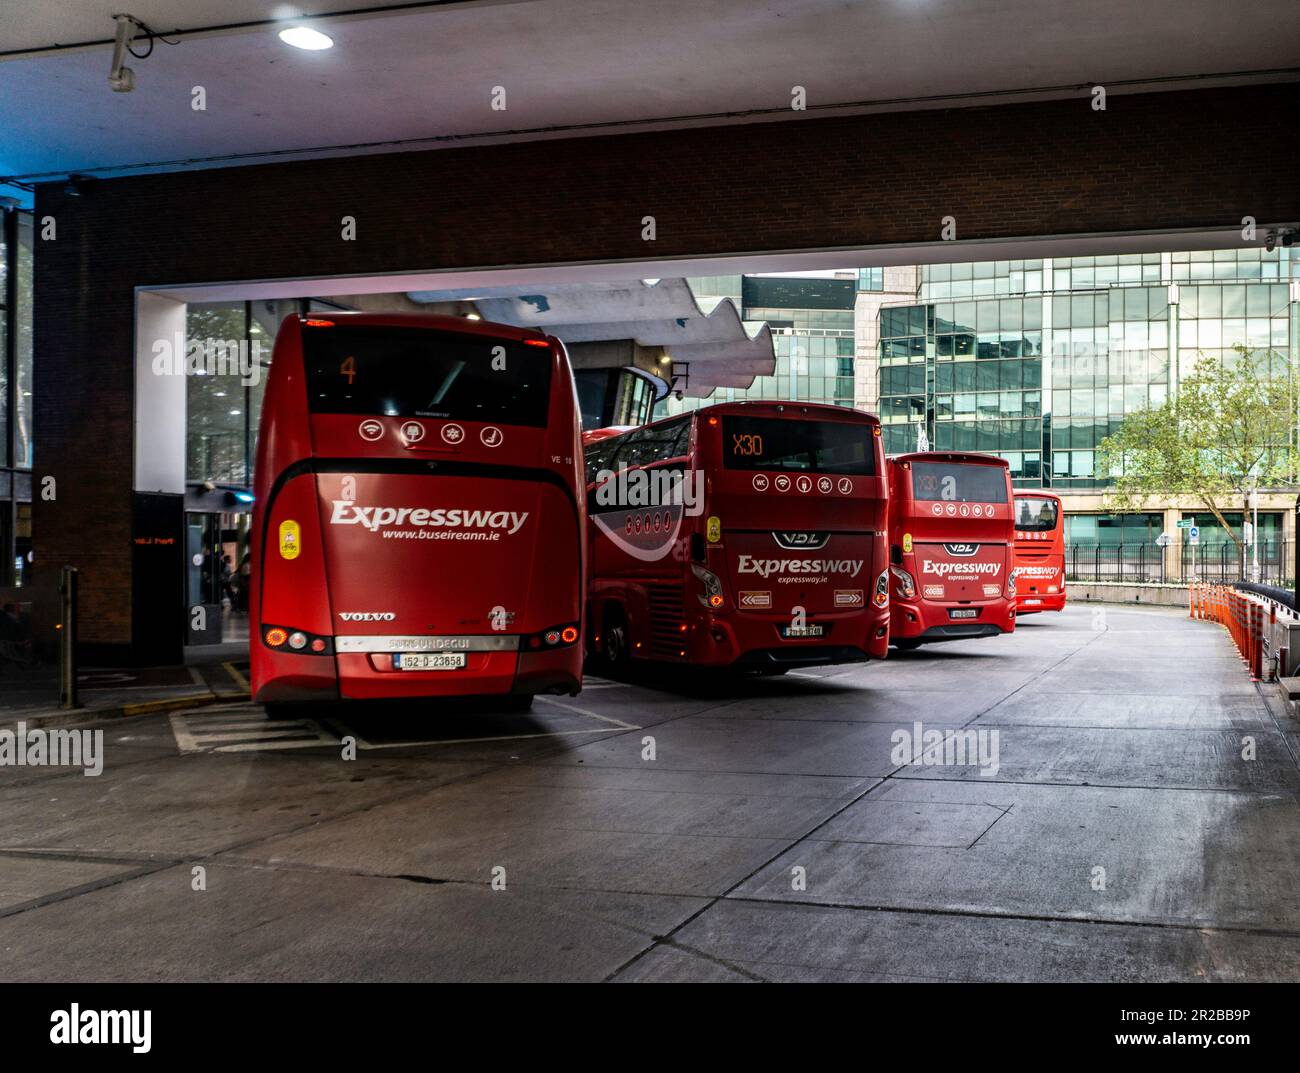 Expressway Coaches, die Premium-Busverbindung von Bus éireann, parkt in Busarus im Stadtzentrum von Dublin, Irland. Stockfoto